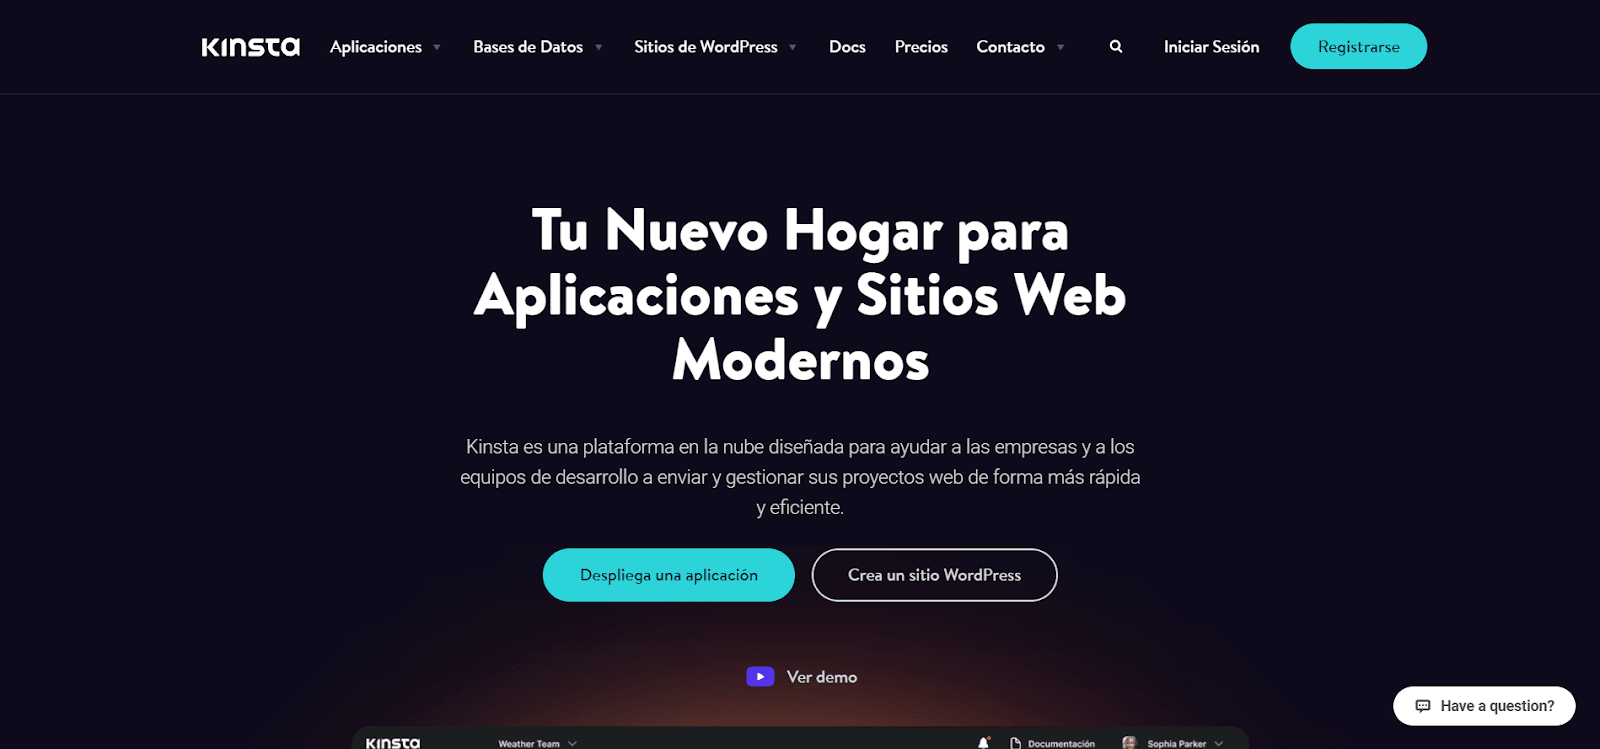 De homepage van Kinsta in het Spaans.